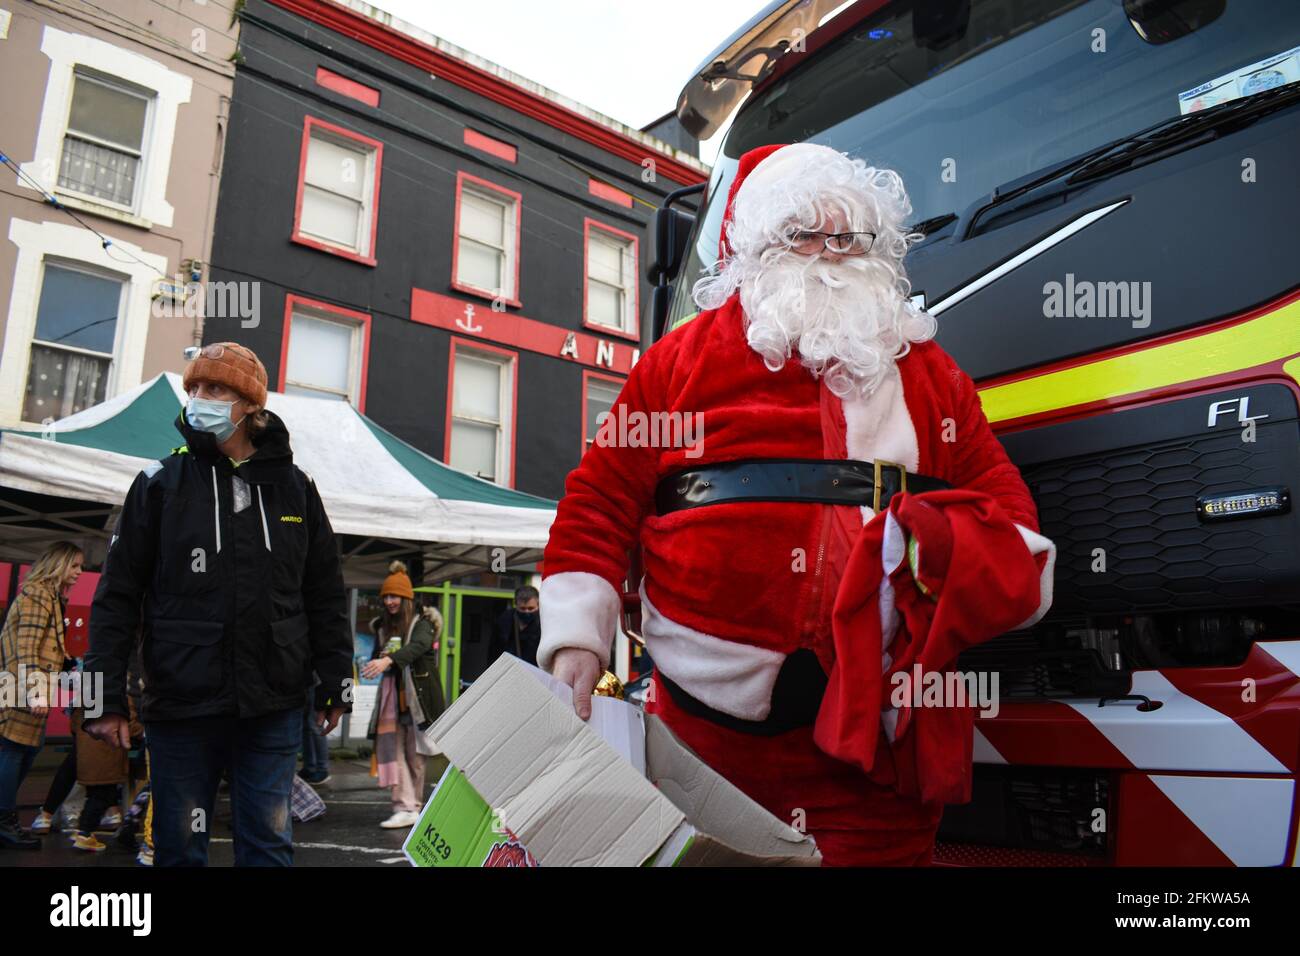 Viele Einheimische versammelten sich auf dem Weihnachtsmarkt in Bantry, um den Weihnachtsmann zu treffen. Bantry, Co Cork. Irland. Stockfoto